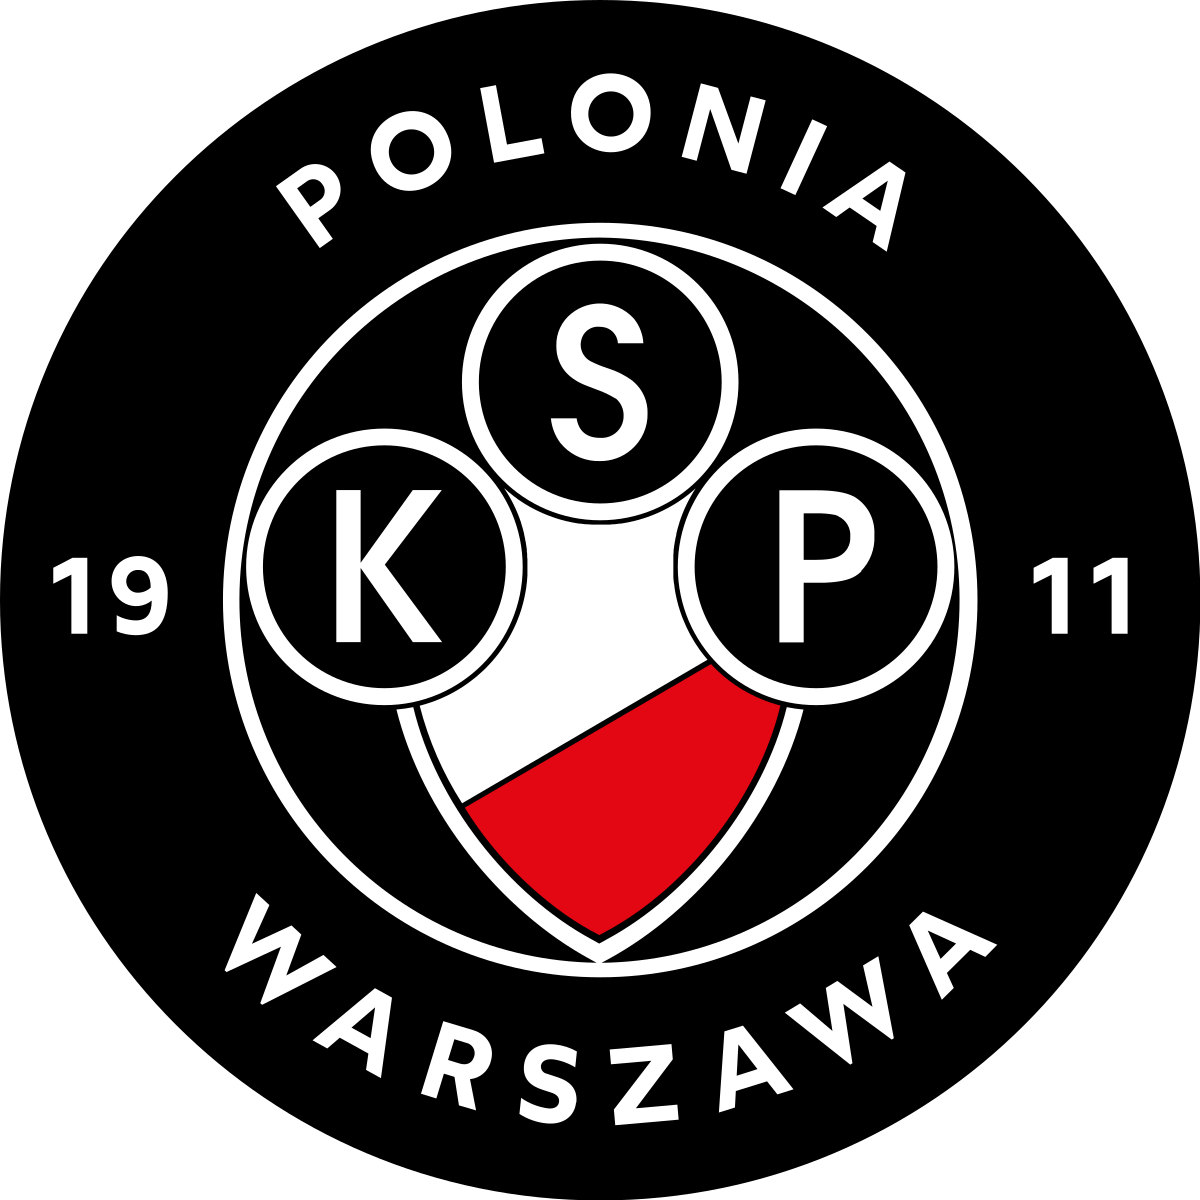 Herb Polonia Warszawa aktualny